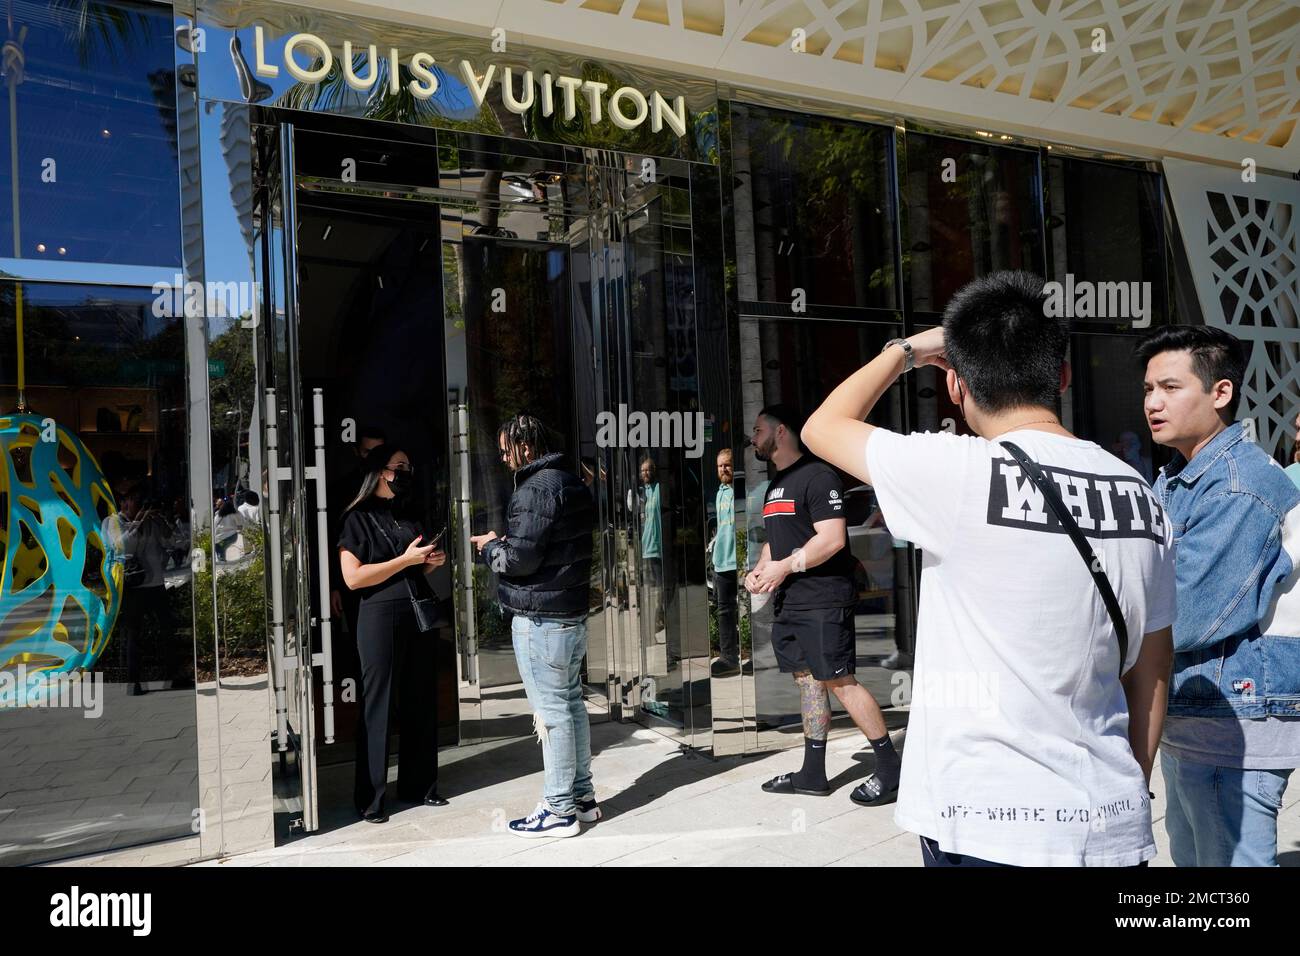 Louis Vuitton's SoHo Pop-Up Features Abloh's Last Collection